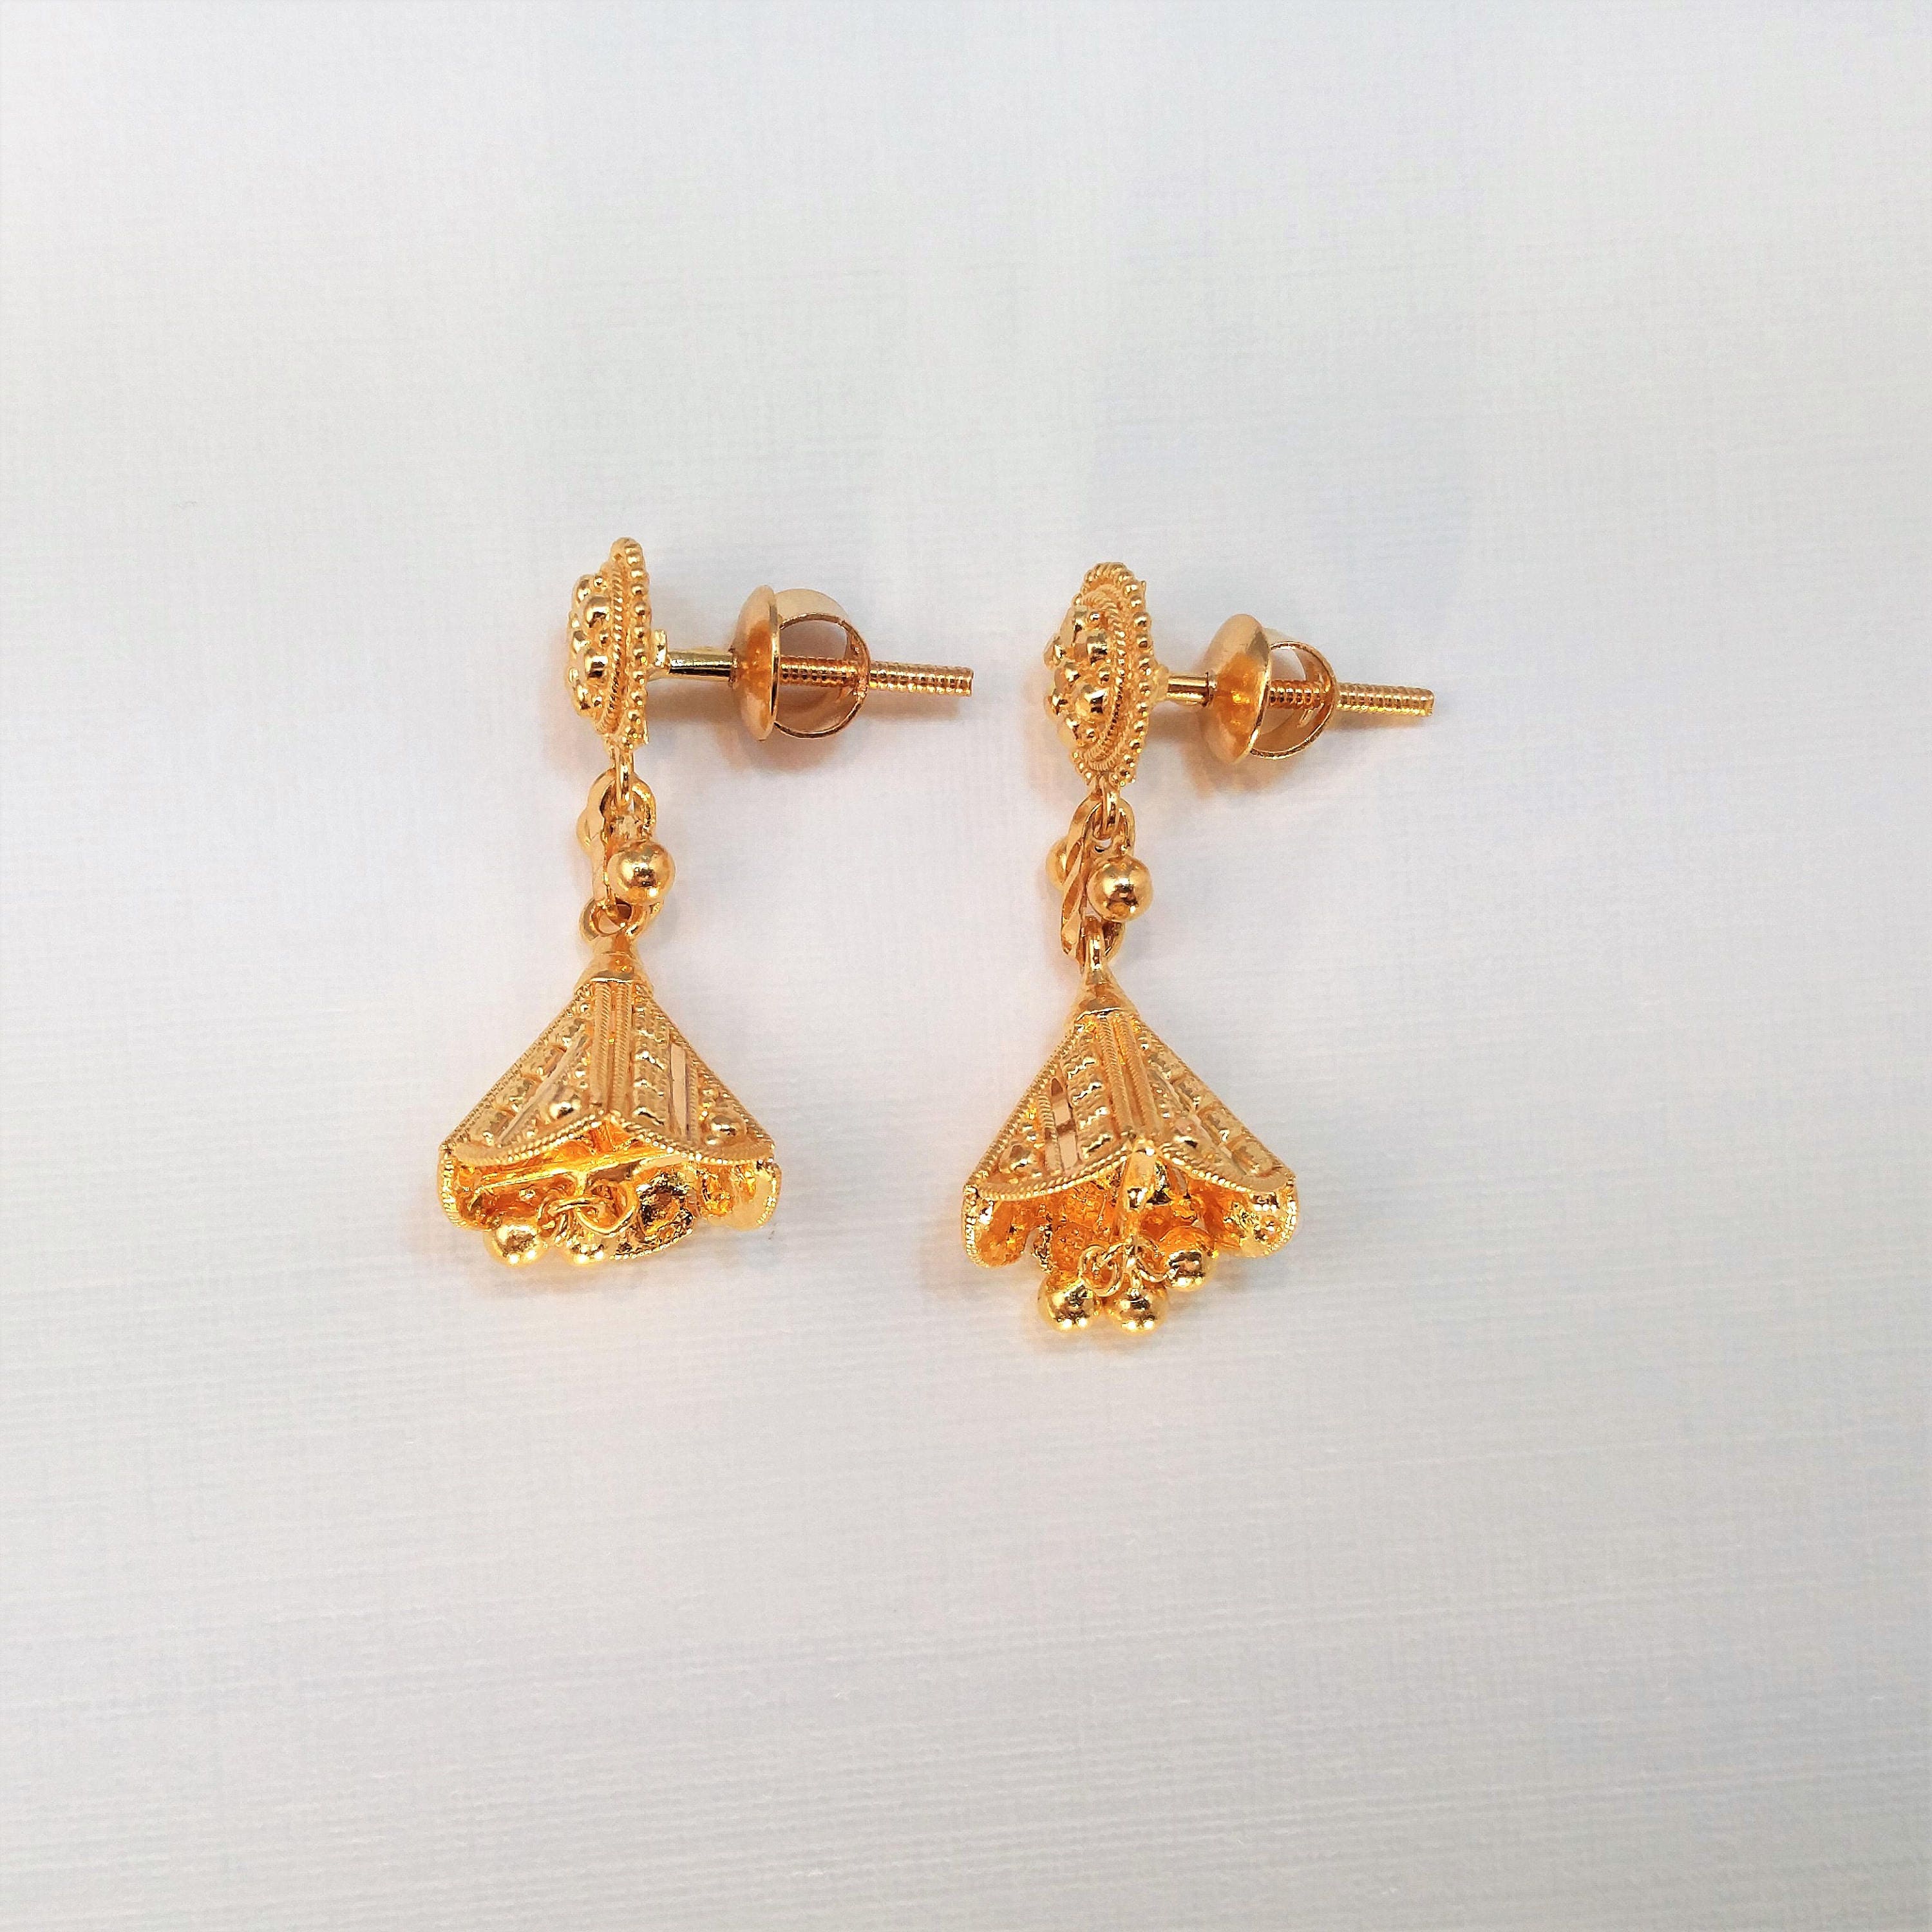 22K Solid Gold Earrings Jewelry Chandelier Jhumka Dangler | Etsy